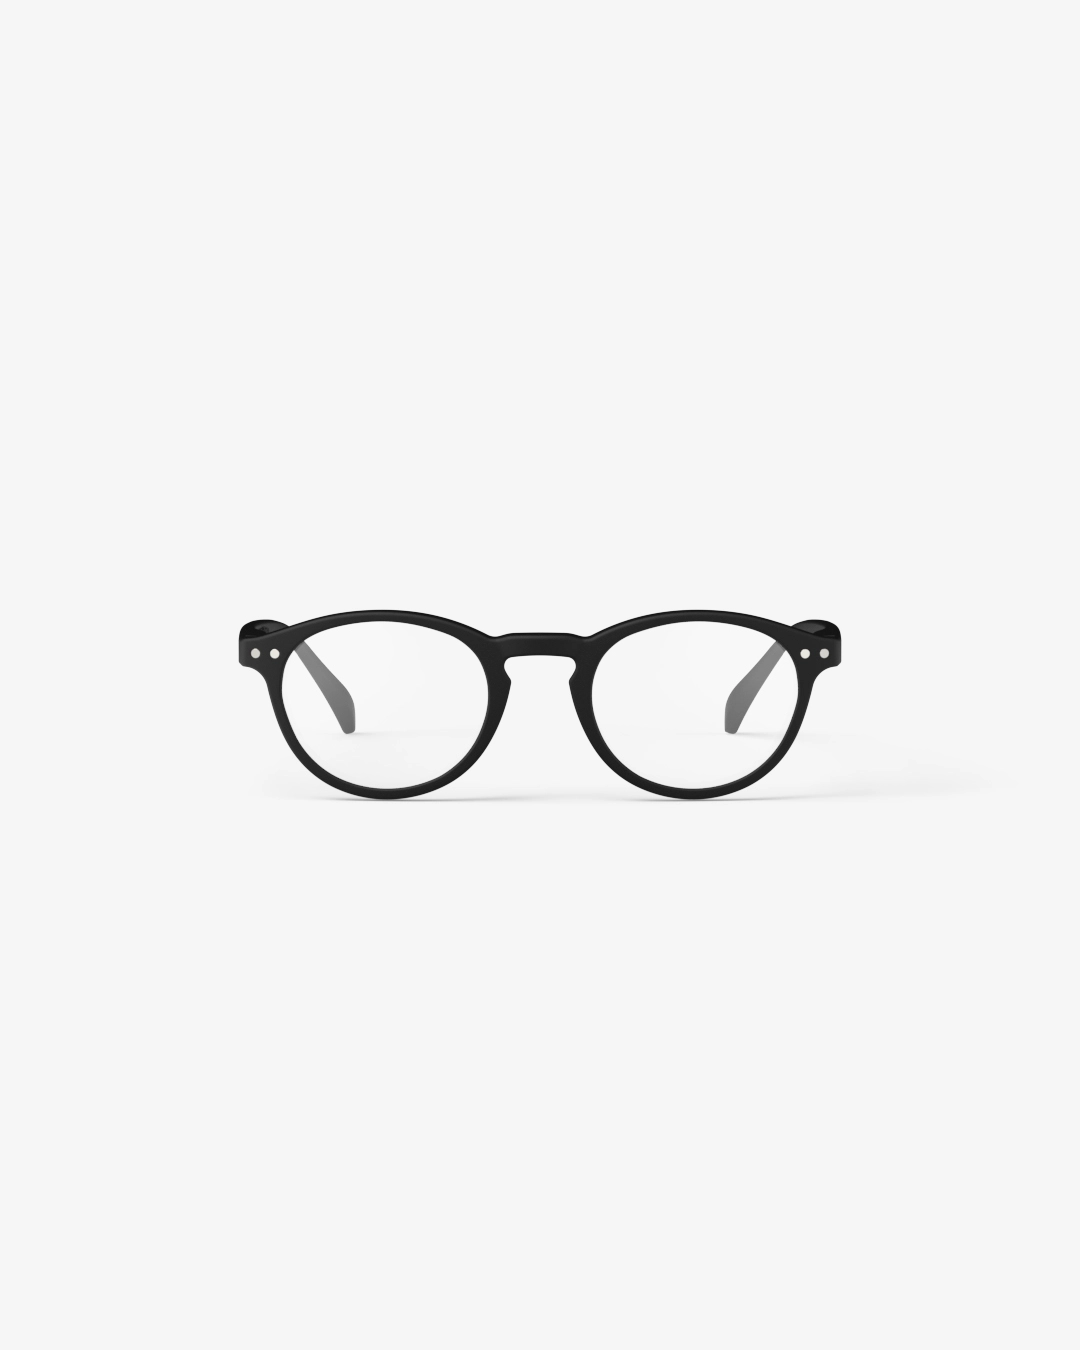 IZIPIZI #A Black Reading Glasses +2.0